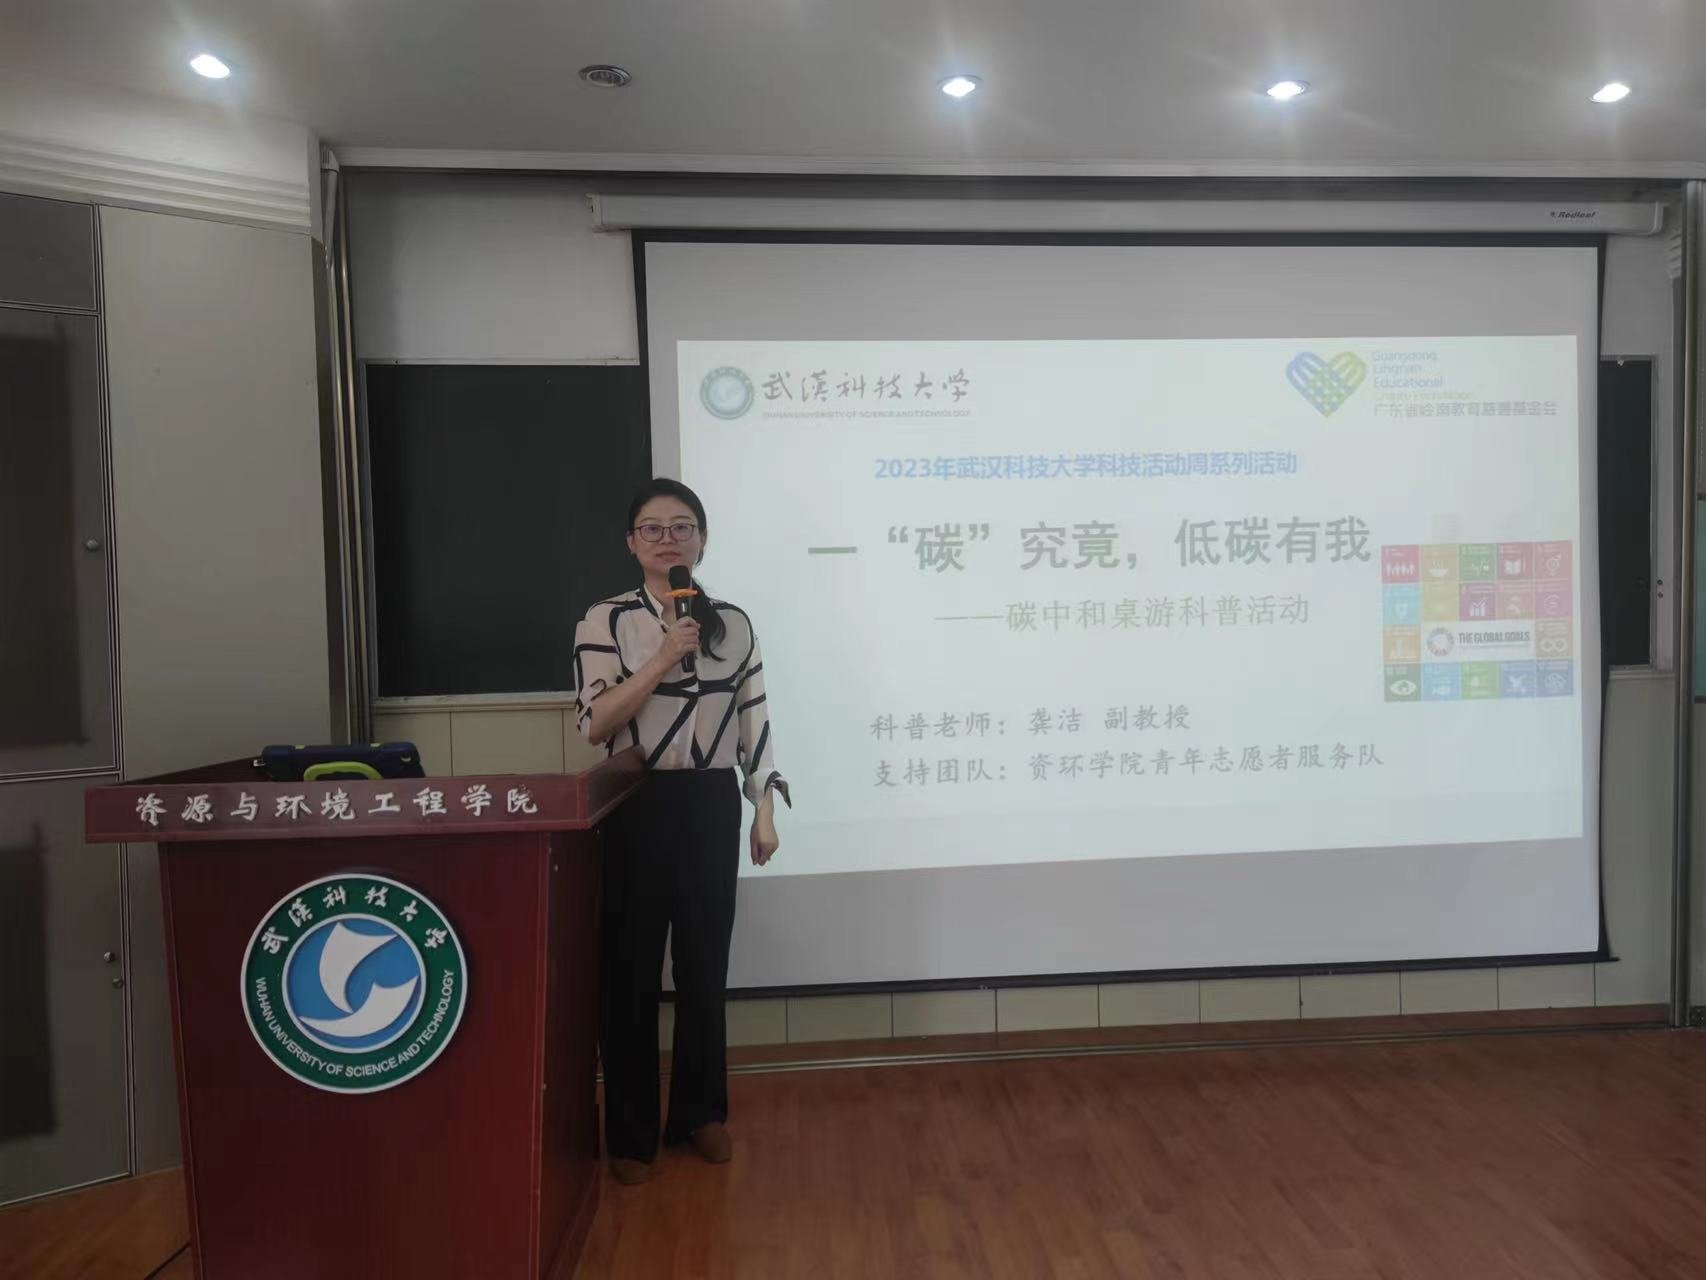 武汉科技大学资源与环境工程学院举办桌游科普活动：以桌游形式传达双碳理念